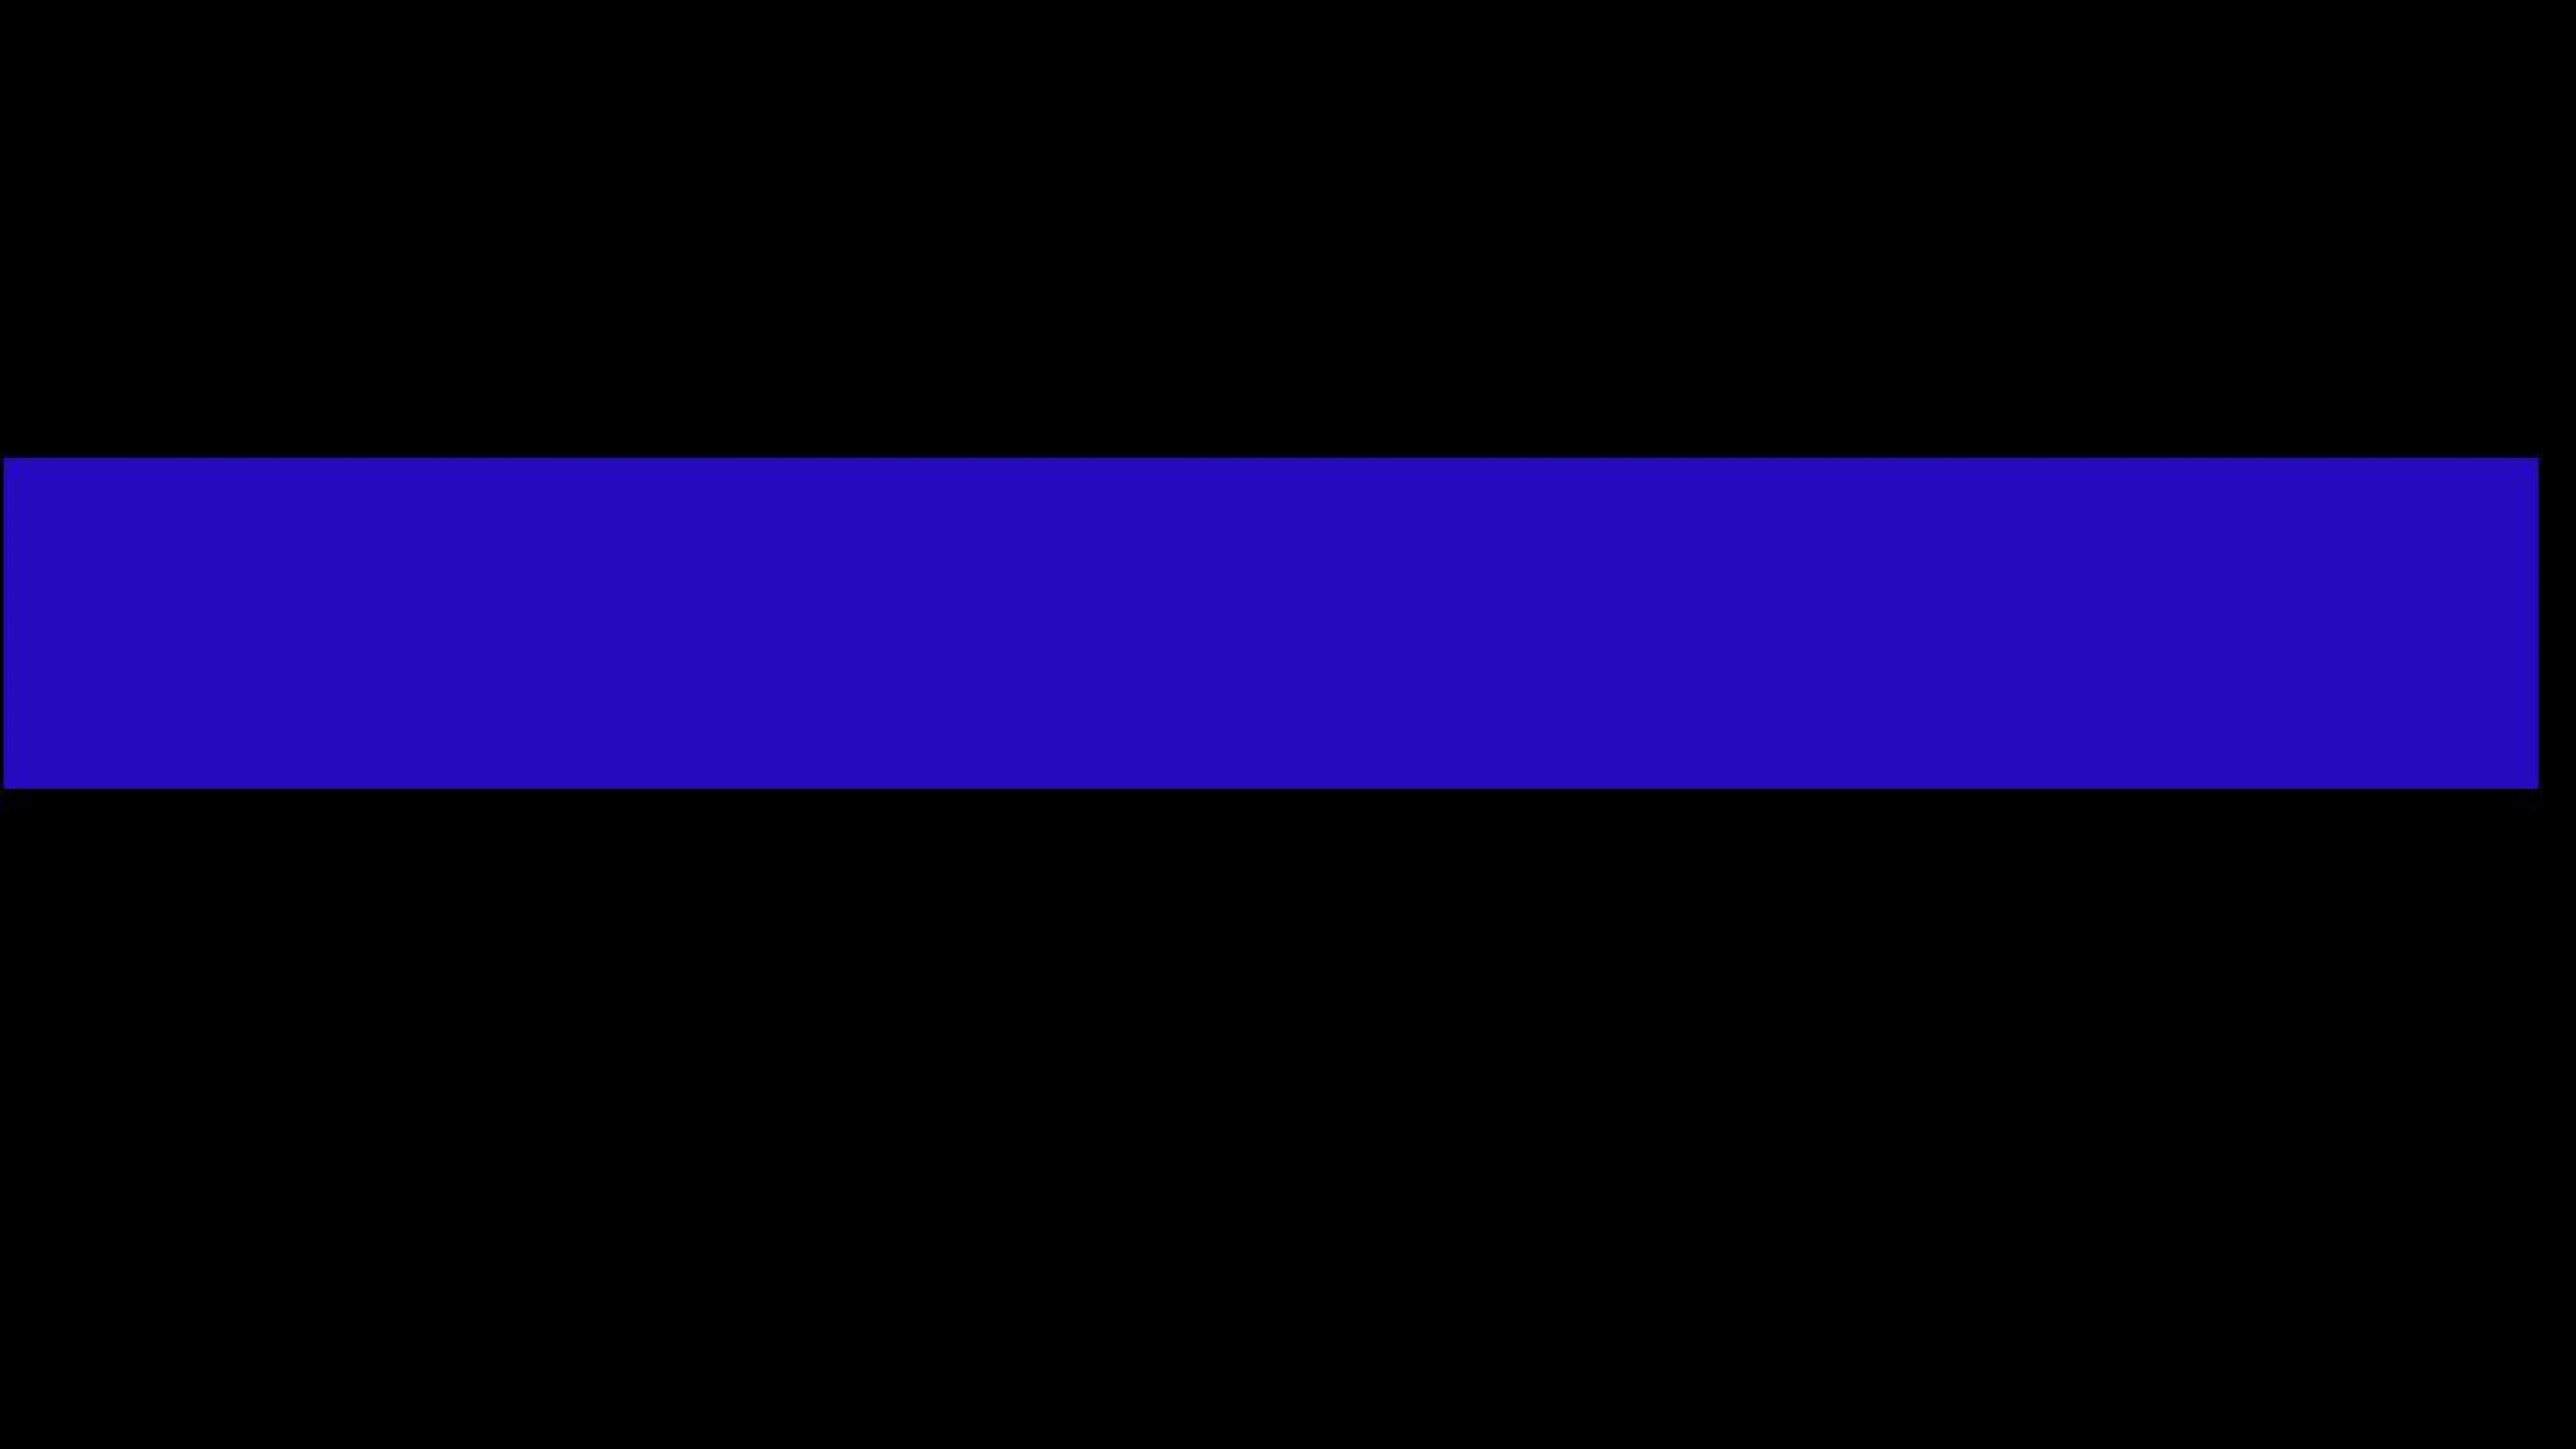 blue line law enforcement backgrounds le themed plix 3840x2160